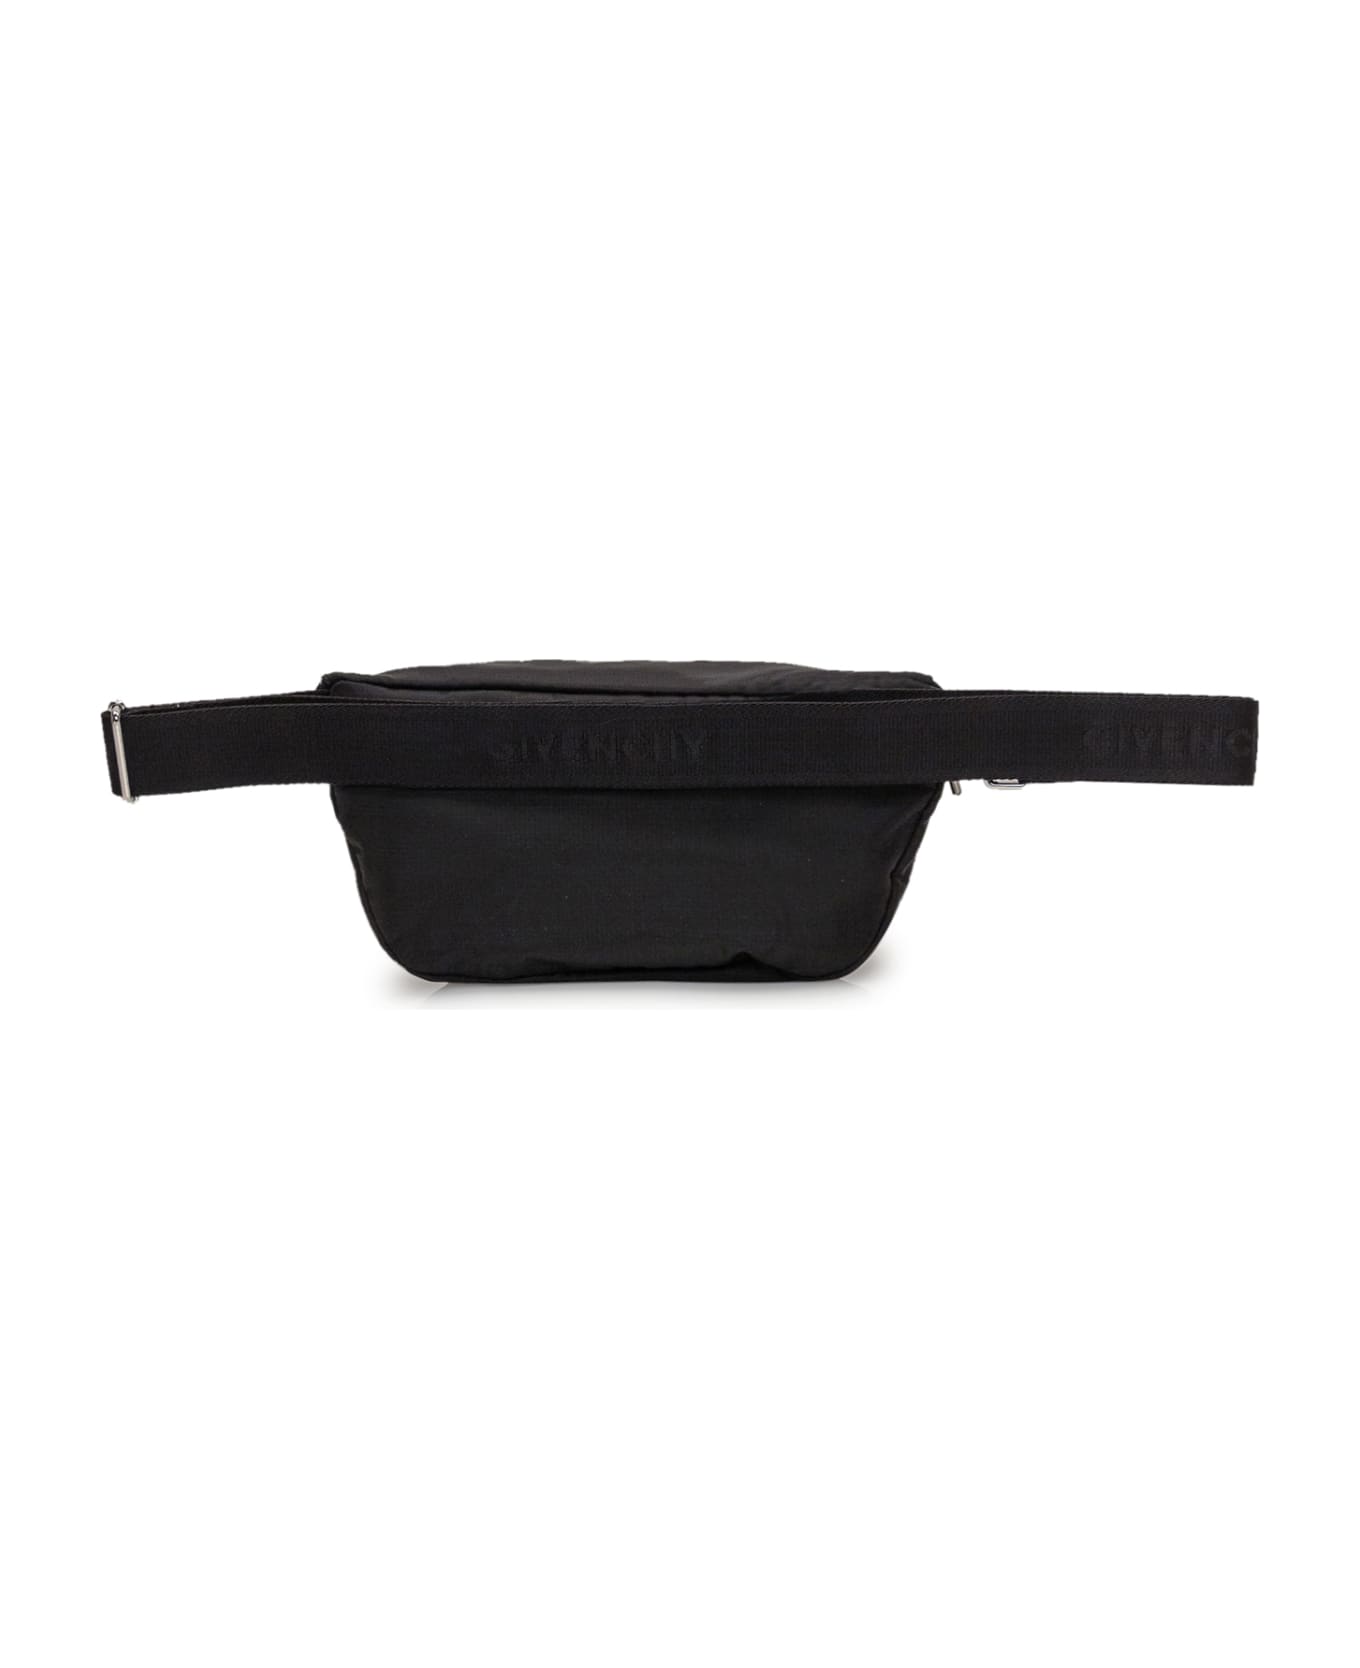 Givenchy G-trek Waist Bag In Black Nylon - Black